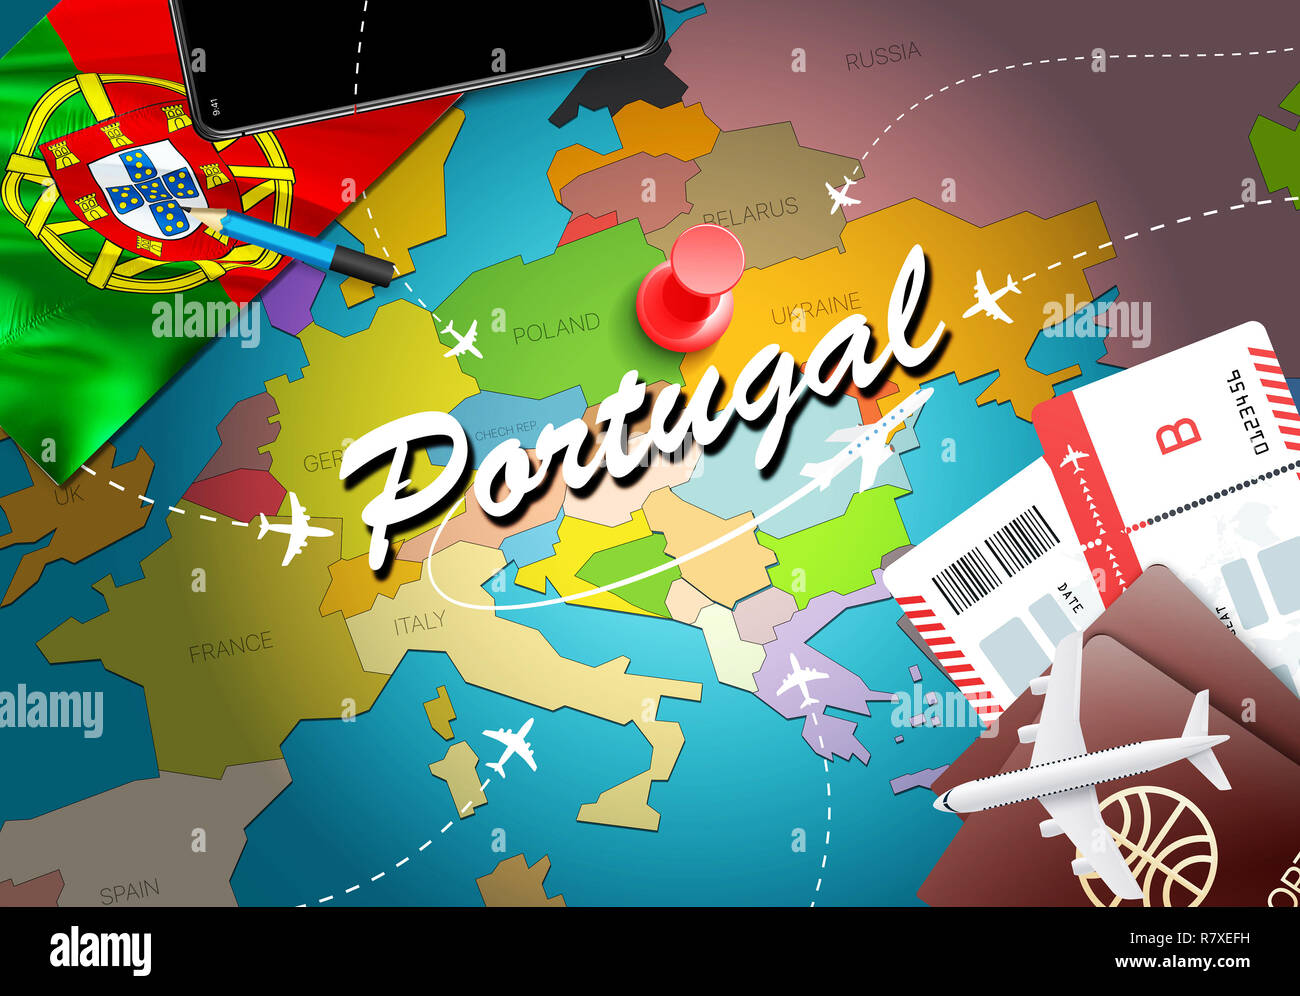 Portugal travel concept map background avec des avions,des billets. Visiter le Portugal Voyages et tourisme concept de destination. Portugal drapeau sur la carte. Avions et de fl Banque D'Images